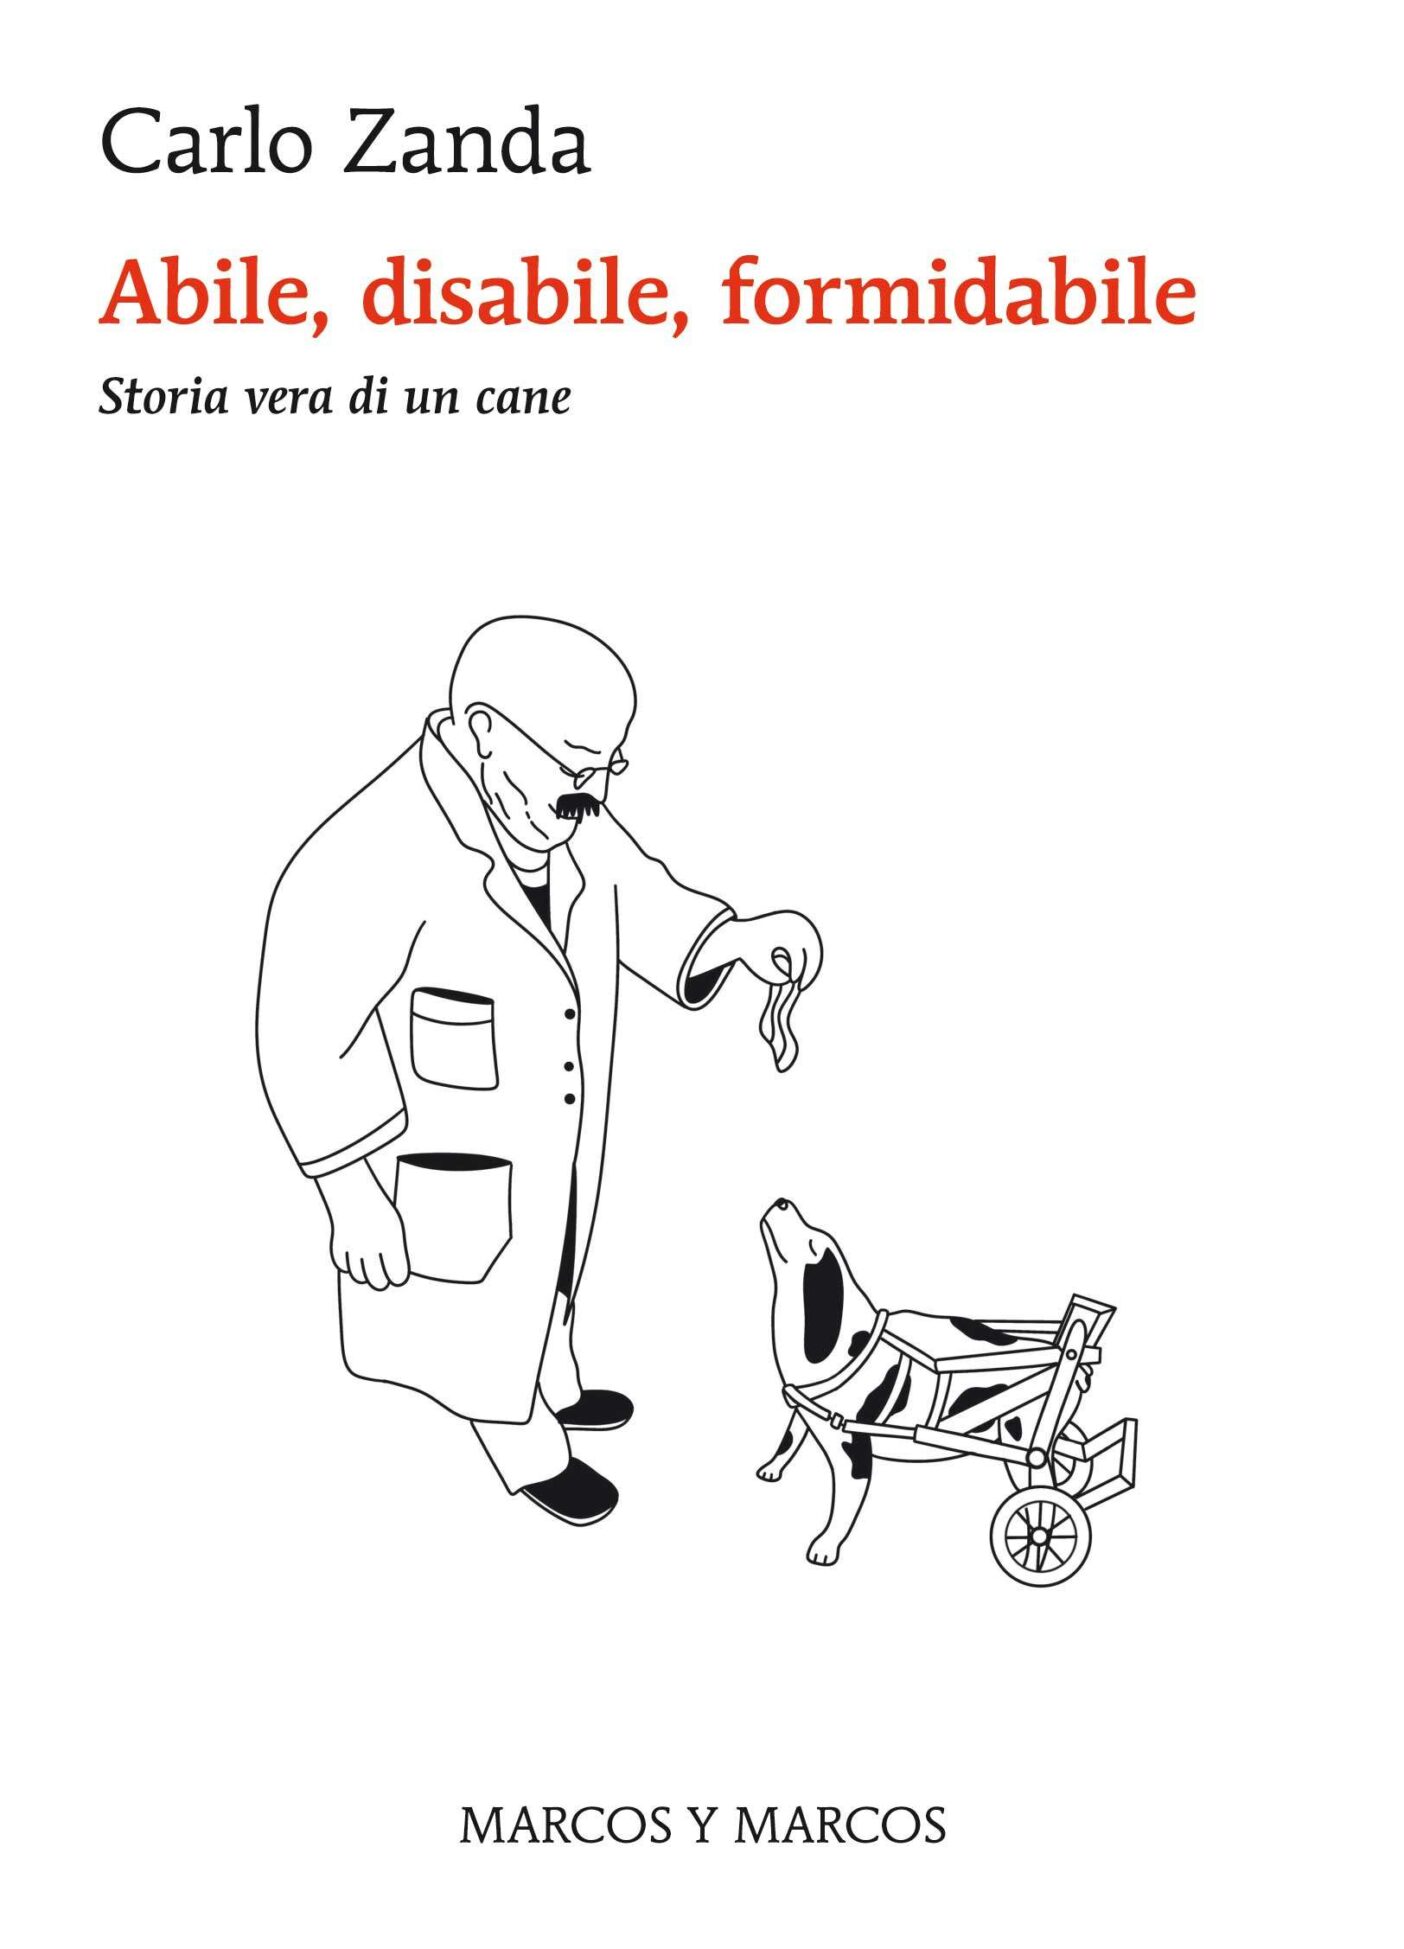 Copertina del libro "Abile, disabile, formidabile" di Carlo Zanda